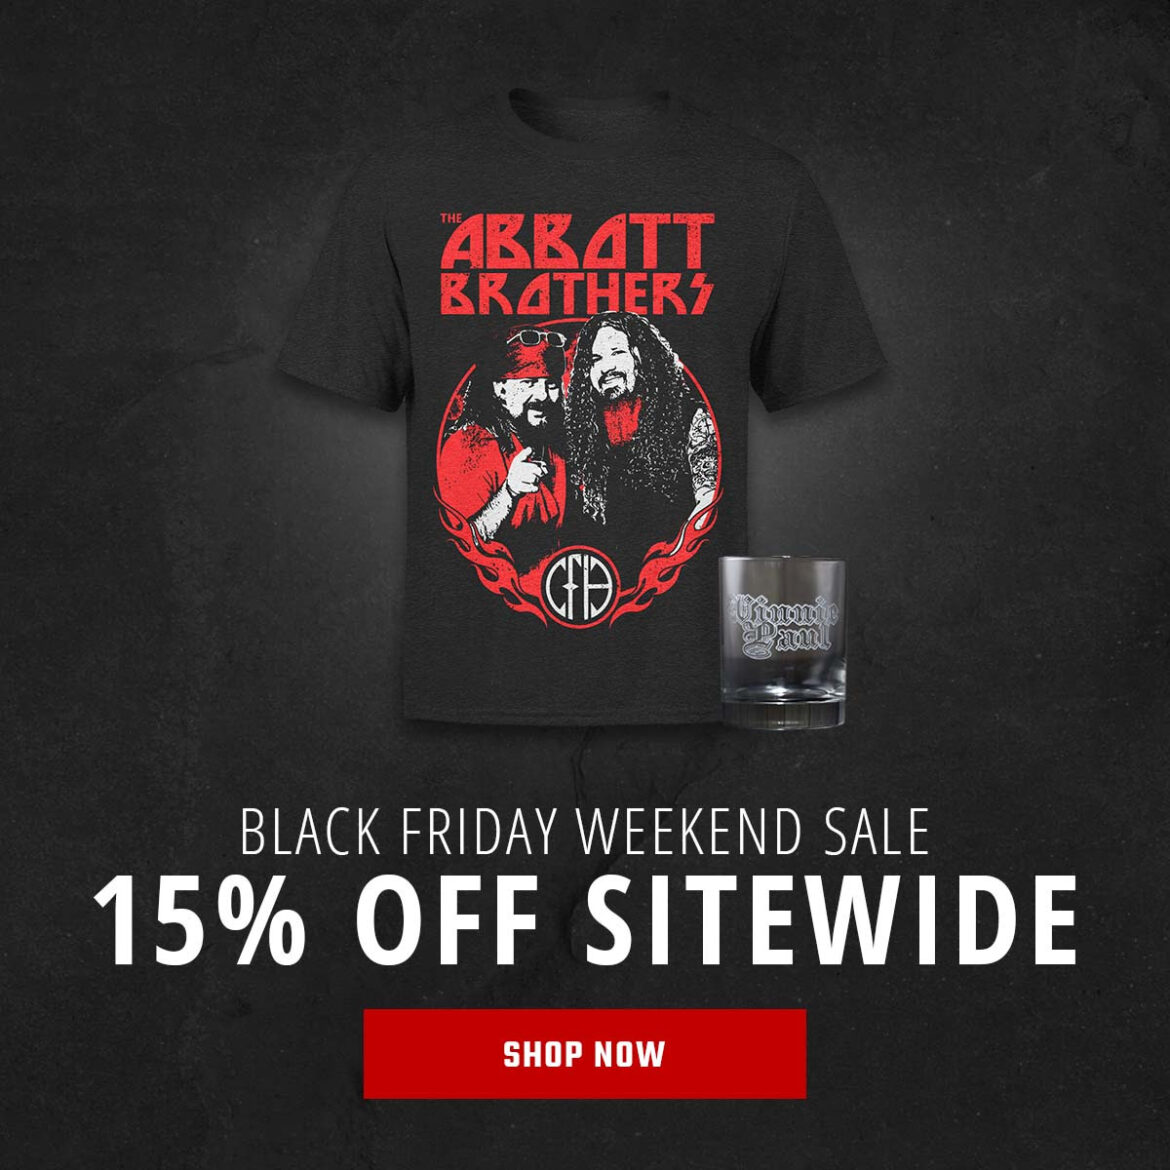 Vinnie Paul’s Online Store ‘Black Friday Weekend Sale’